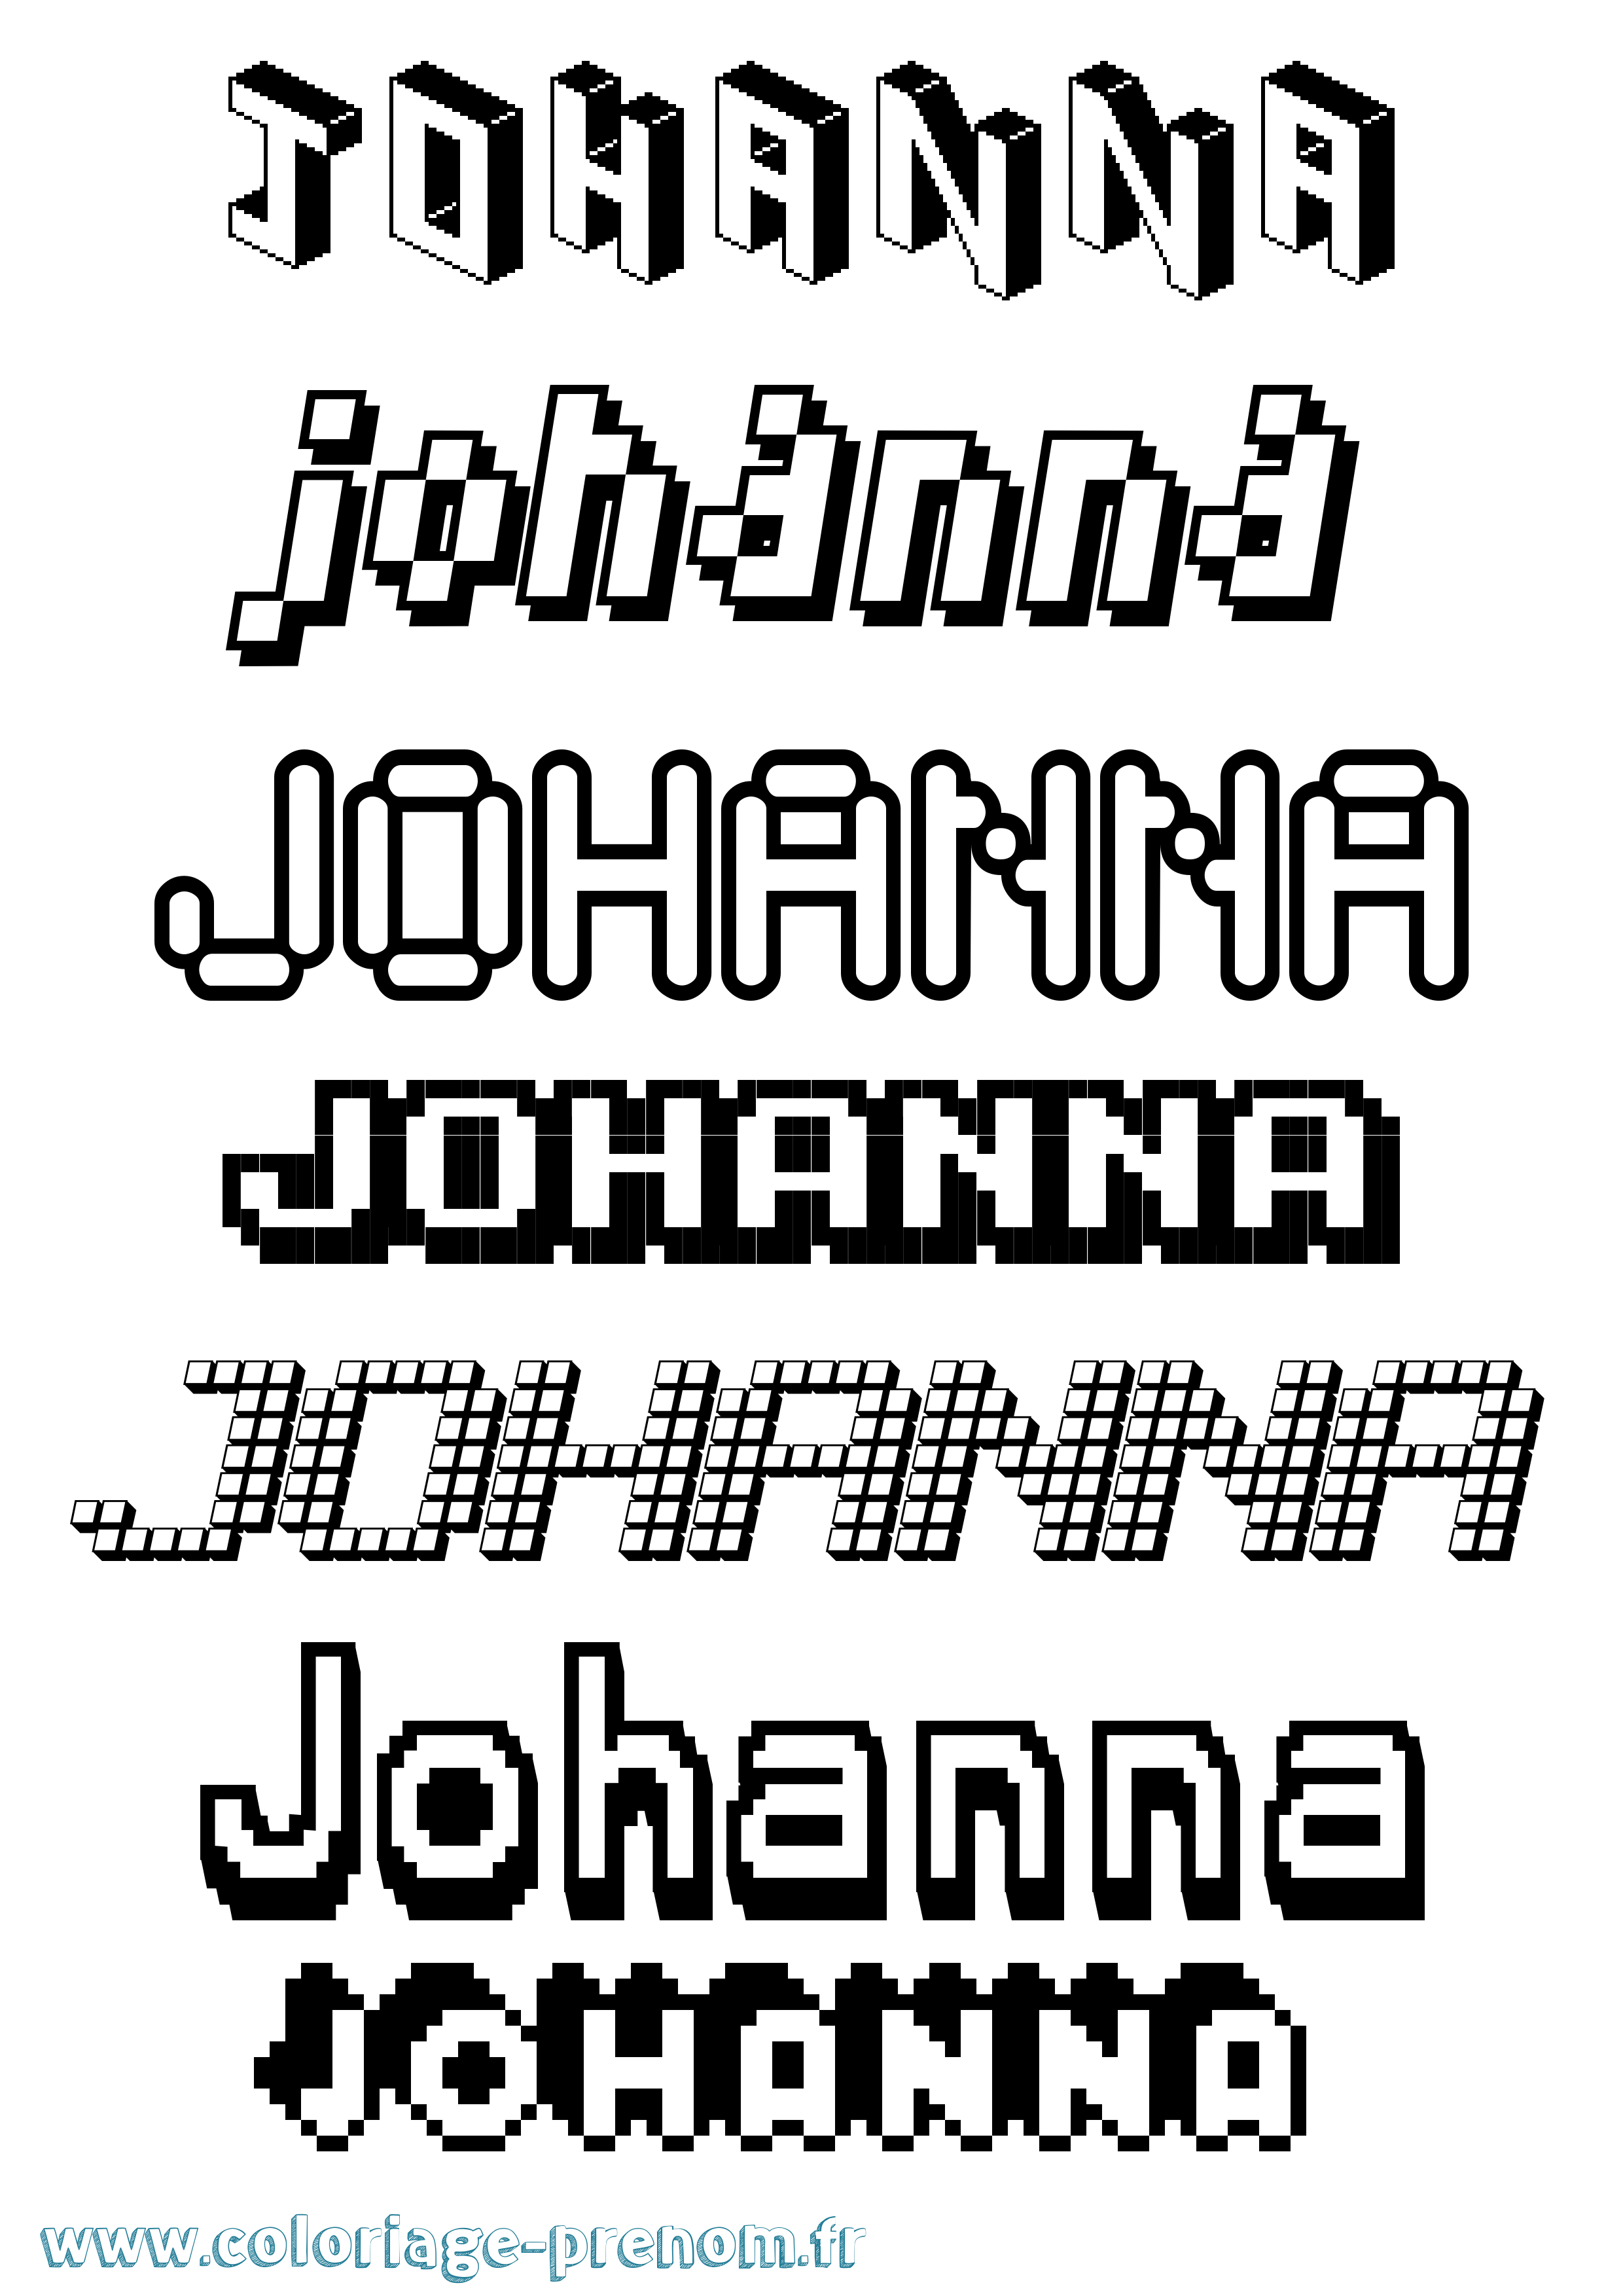 Coloriage prénom Johanna